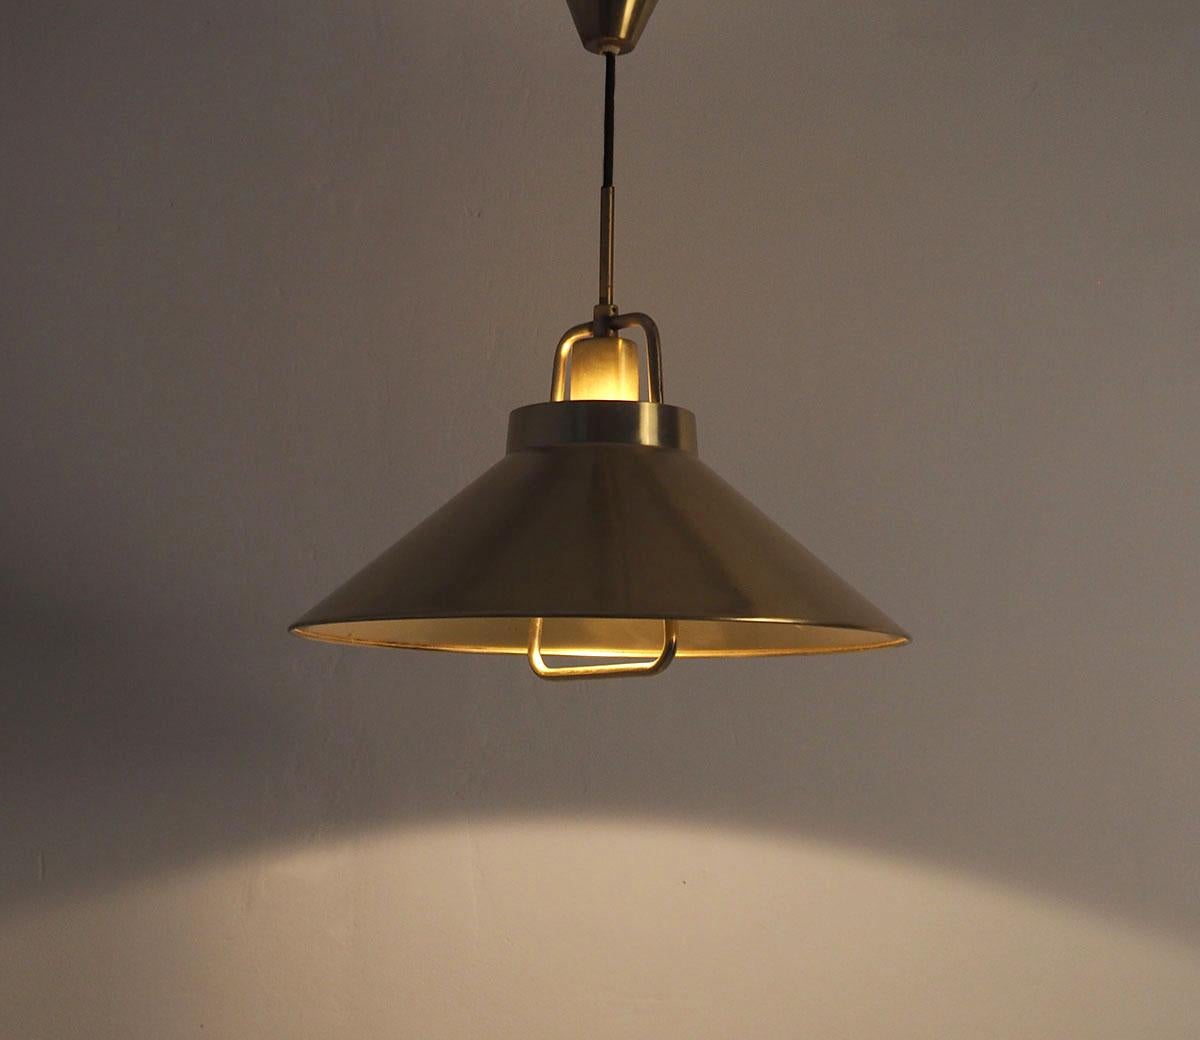 Lampe suspendue en laiton, à hauteur d'homme, conçue par Fritz Schlegel et produite par Lyfa dans les années 1960.

Modèle P295.

La lampe est réglable en hauteur à l'aide d'une poulie dans un boîtier en laiton. La lampe peut être réglée en douceur